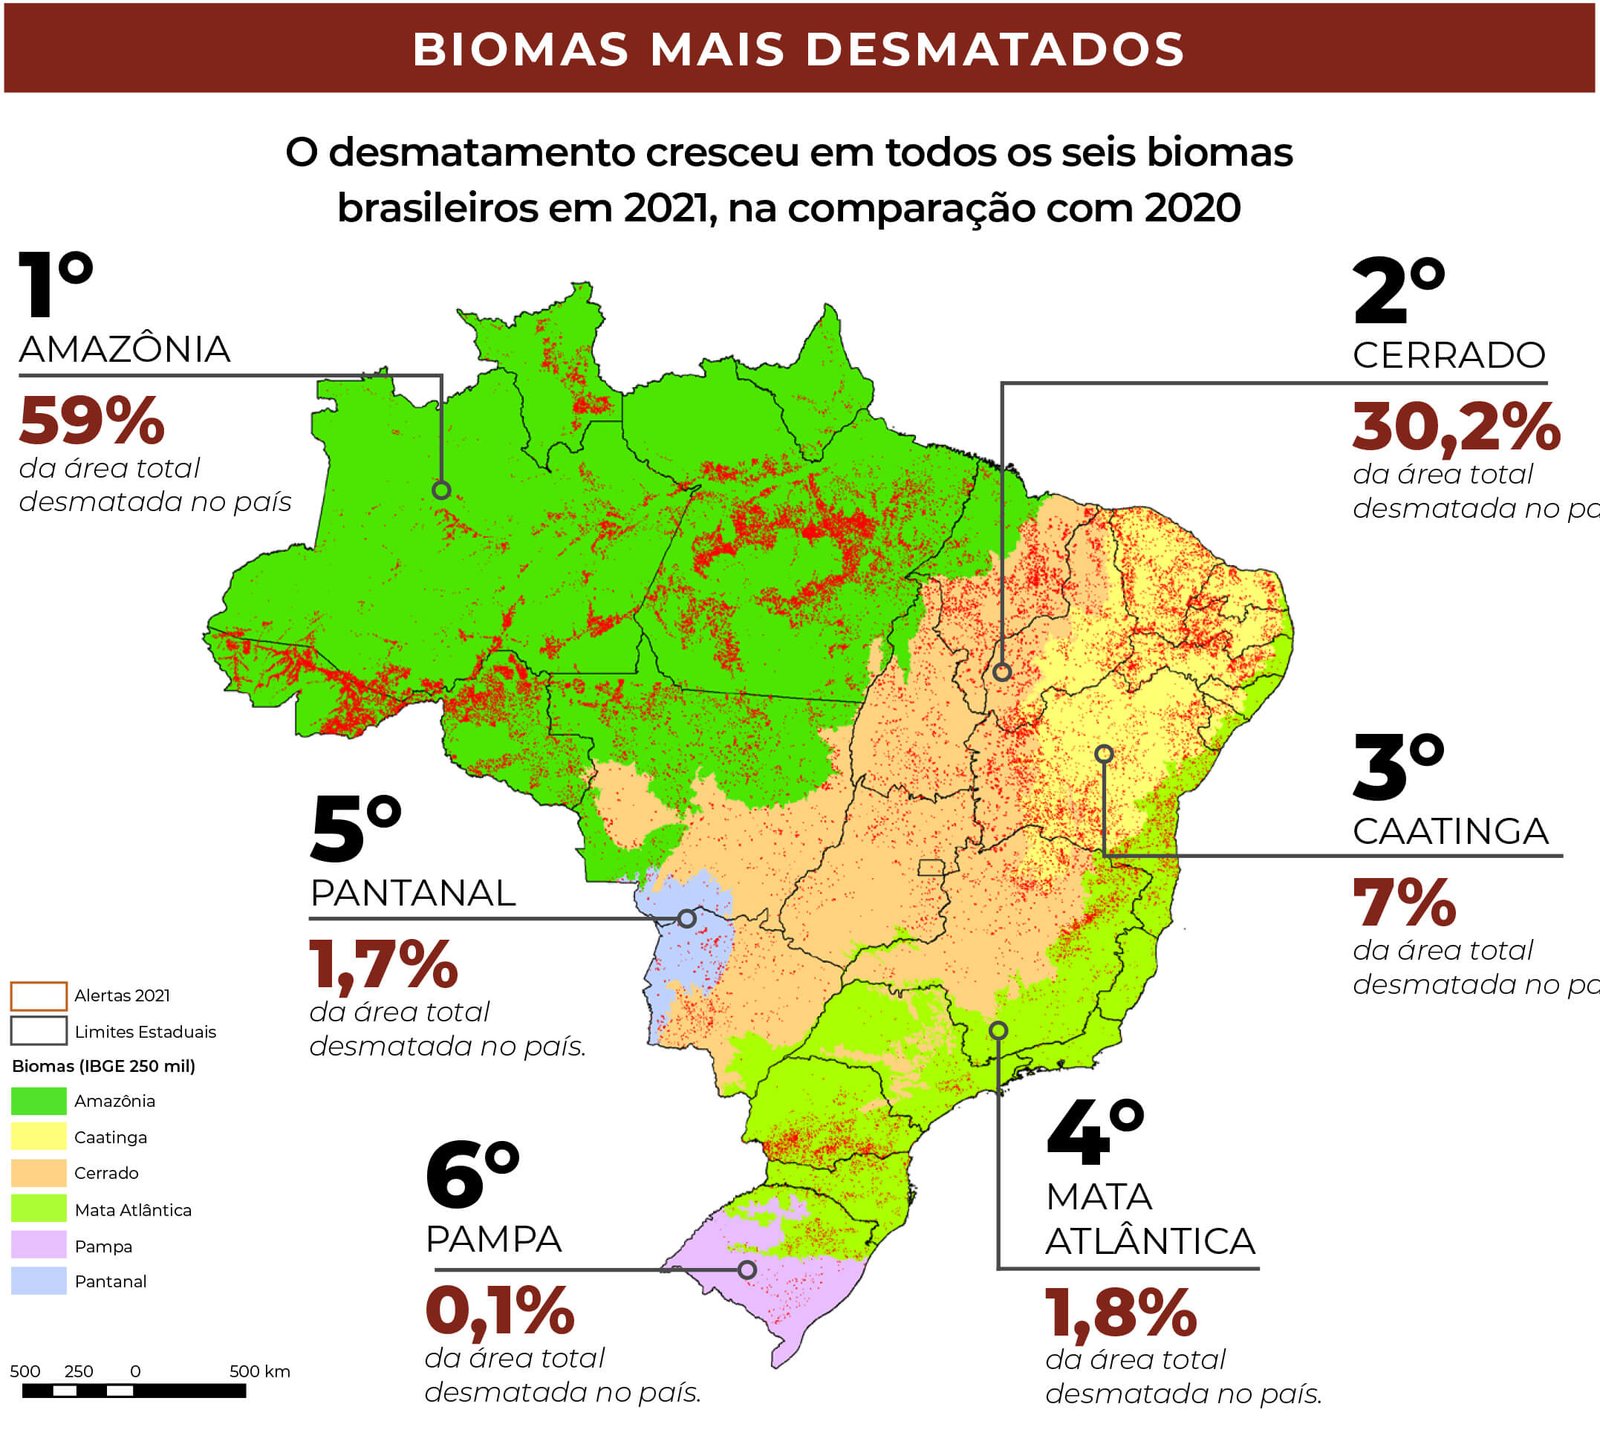 Mapa do Brasil destacando, por biomas, o ranking de desmatamento em 2021: 1° AMAZÔNIA 59%; 2° CERRADO 30,2%; 3° CAATINGA 7%; 4° MATA ATLÂNTICA 1,8%; 5° PANTANAL 1,7%; e 6° PAMPA 0,1%